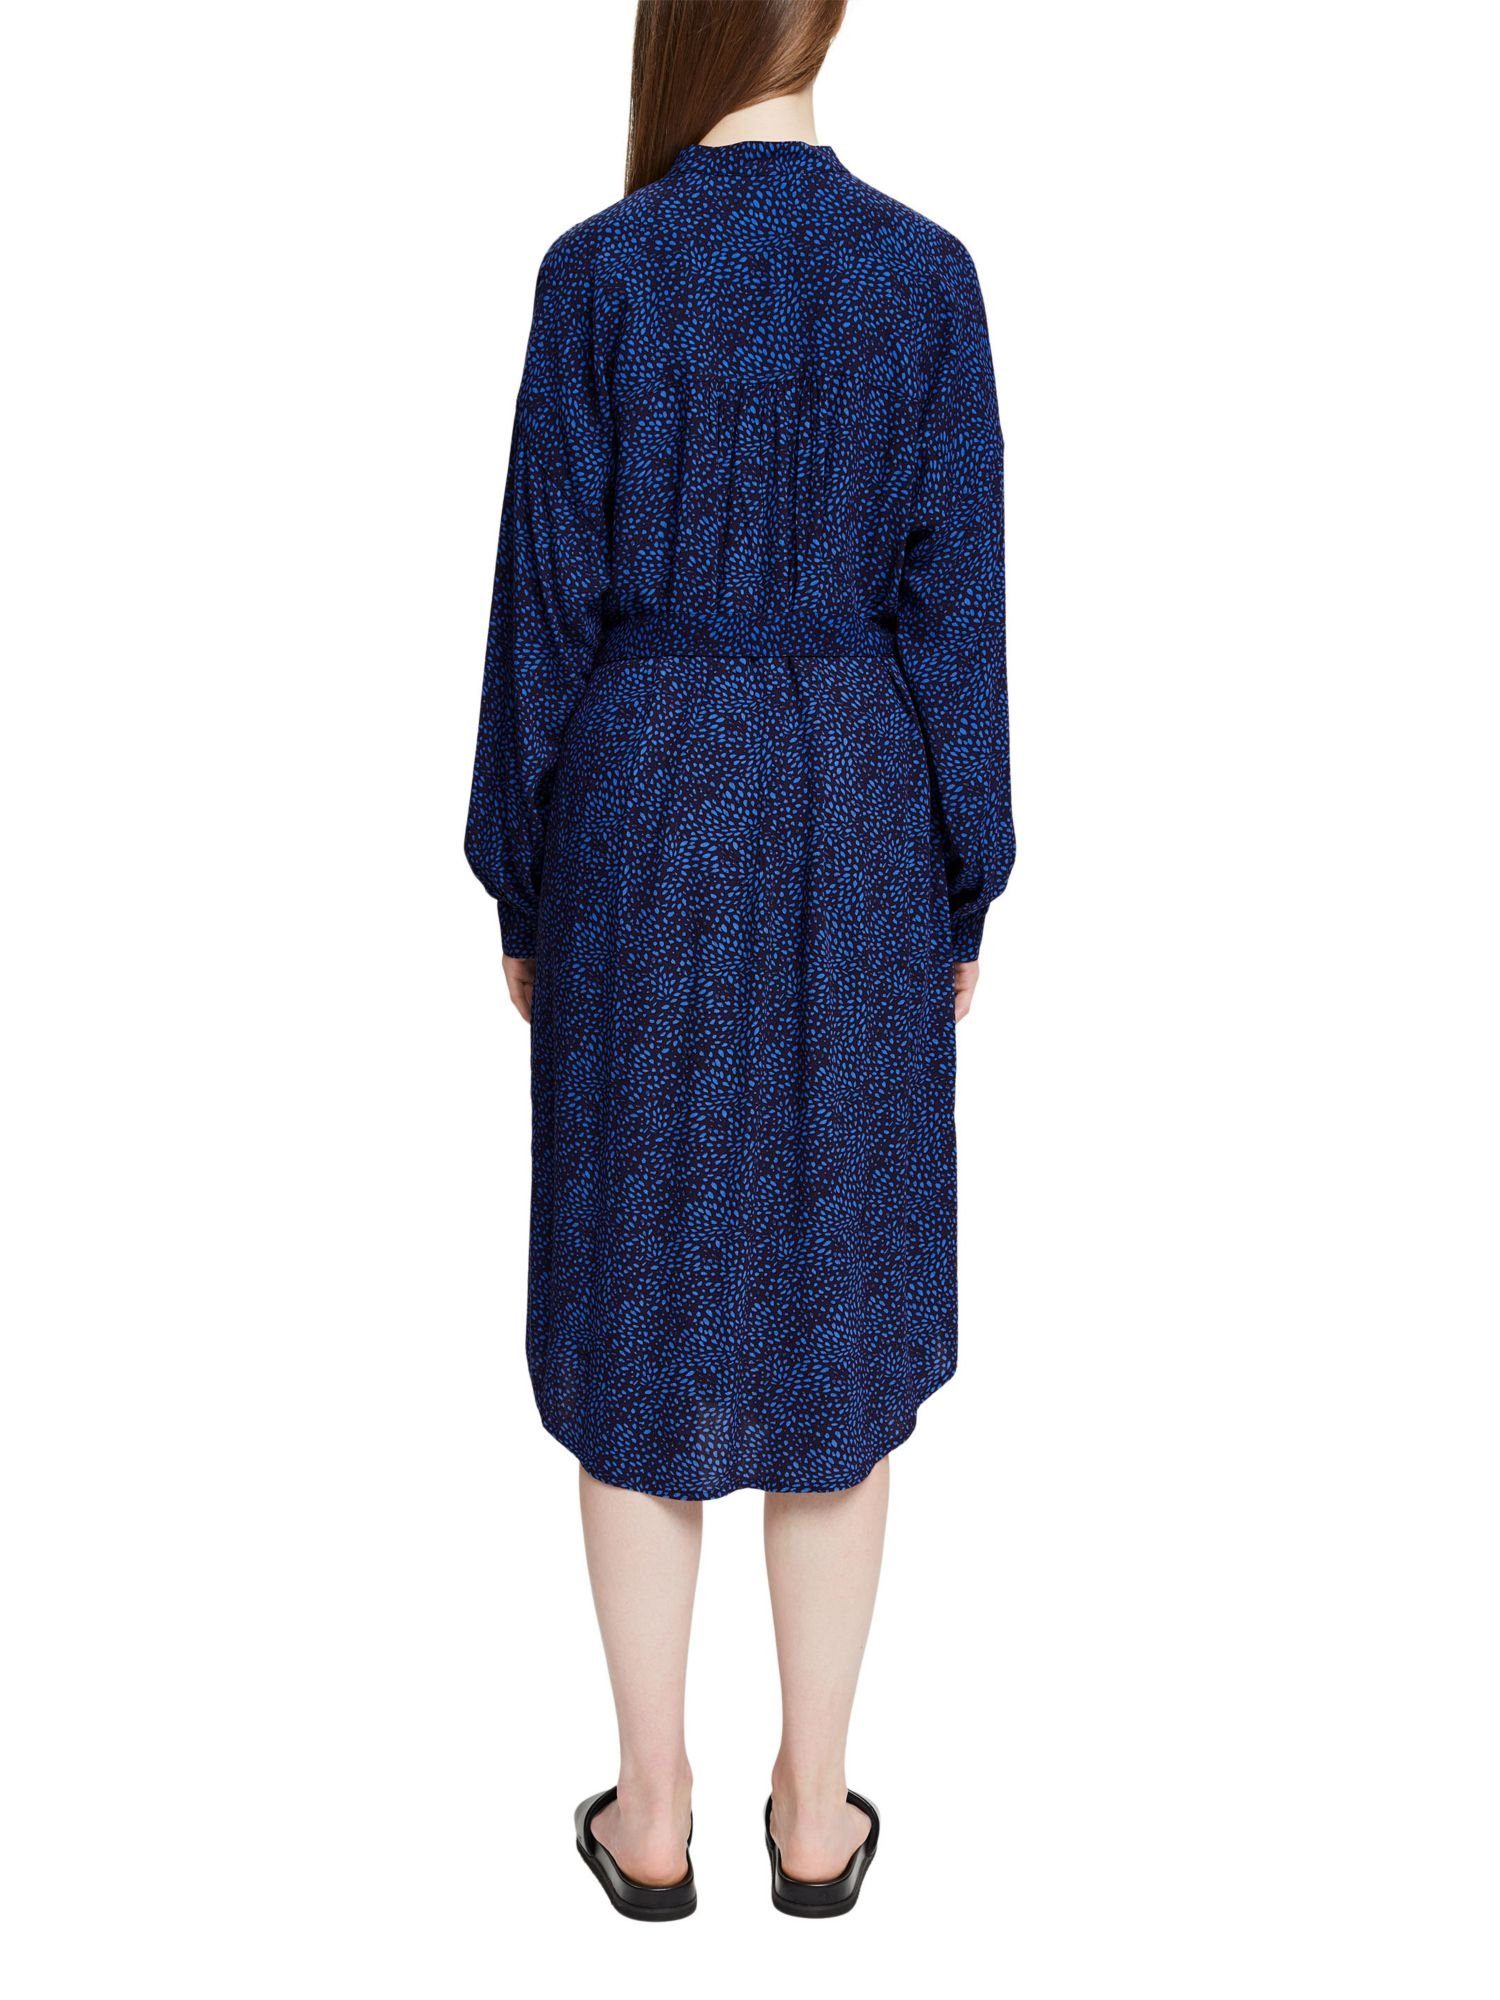 Muster NEW Esprit ECOVERO™ NAVY LENZING™ Kleid und Gürtel, mit Minikleid